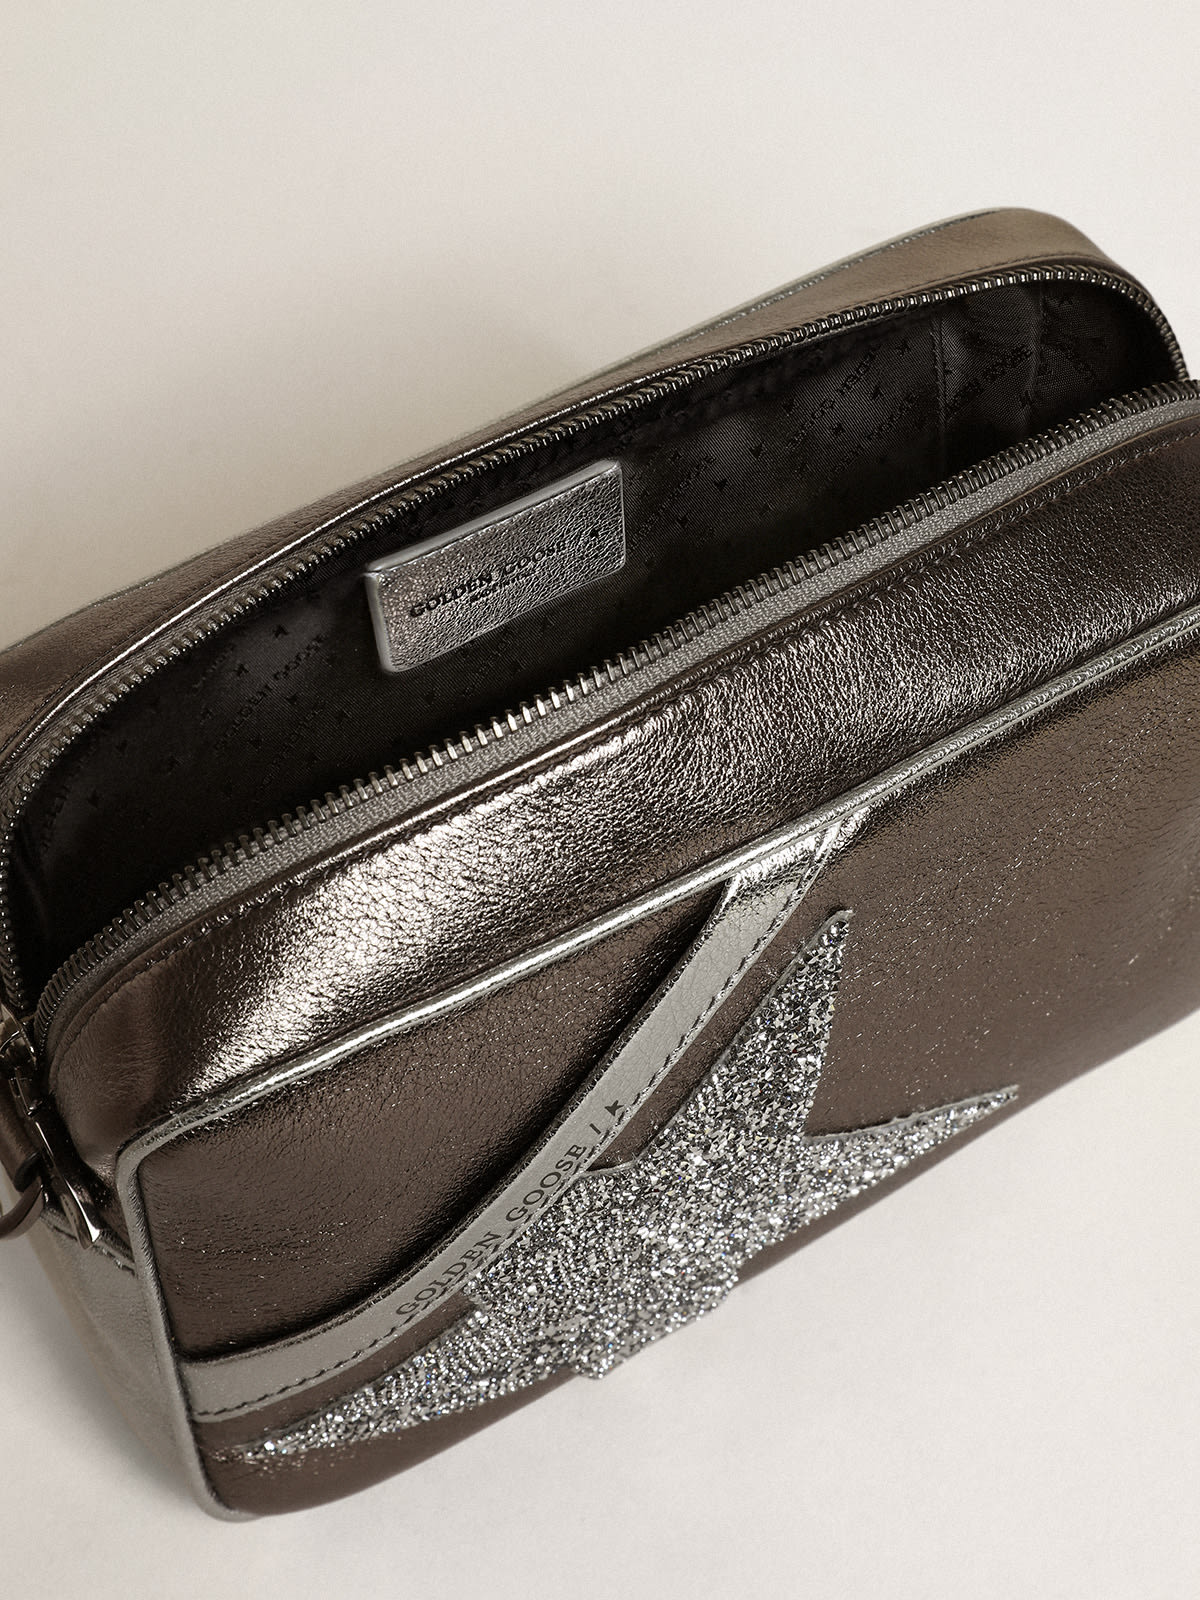 Golden Goose - Bolso Star Bag de piel laminada color plateado y gris antracita con estrella de cristales Swarovski in 